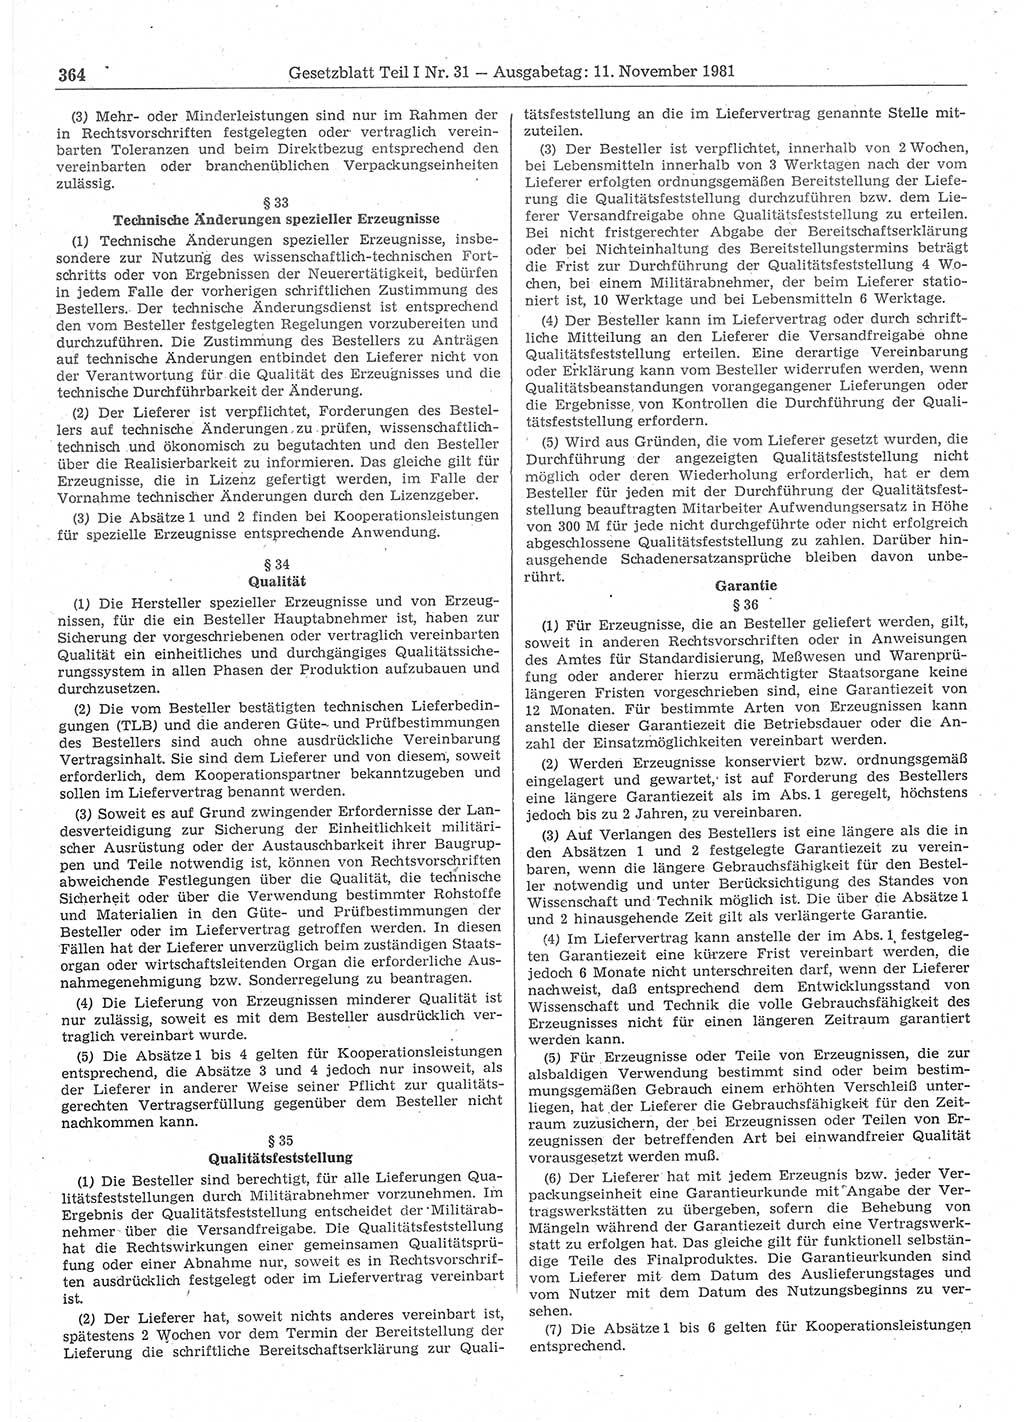 Gesetzblatt (GBl.) der Deutschen Demokratischen Republik (DDR) Teil Ⅰ 1981, Seite 364 (GBl. DDR Ⅰ 1981, S. 364)